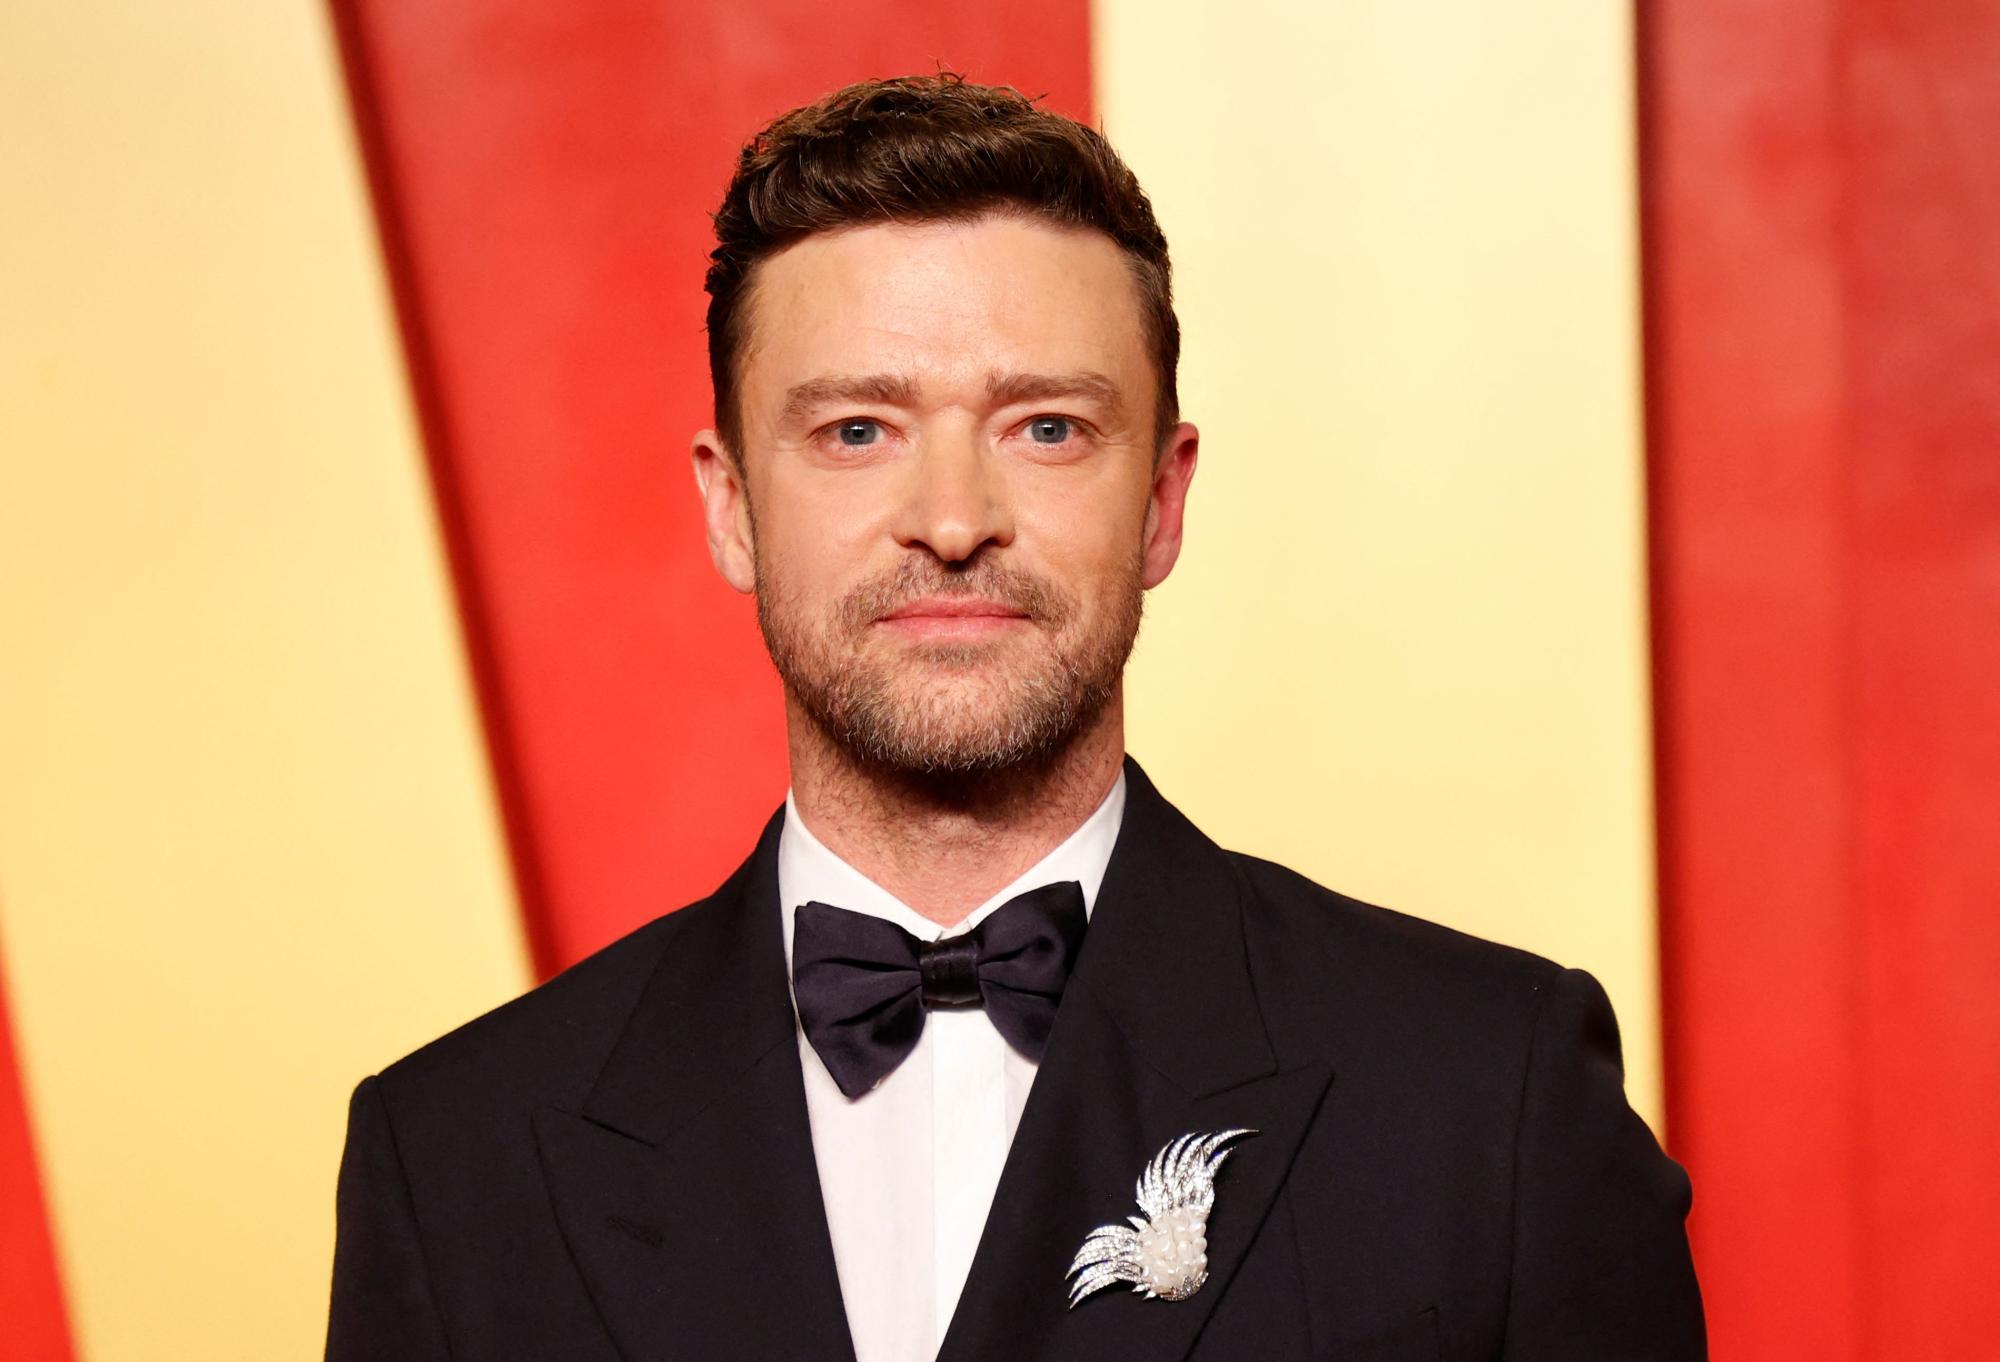 Nach Verhaftung: Wie Justin Timberlake jetzt zu unerwartetem Reichtum kommt